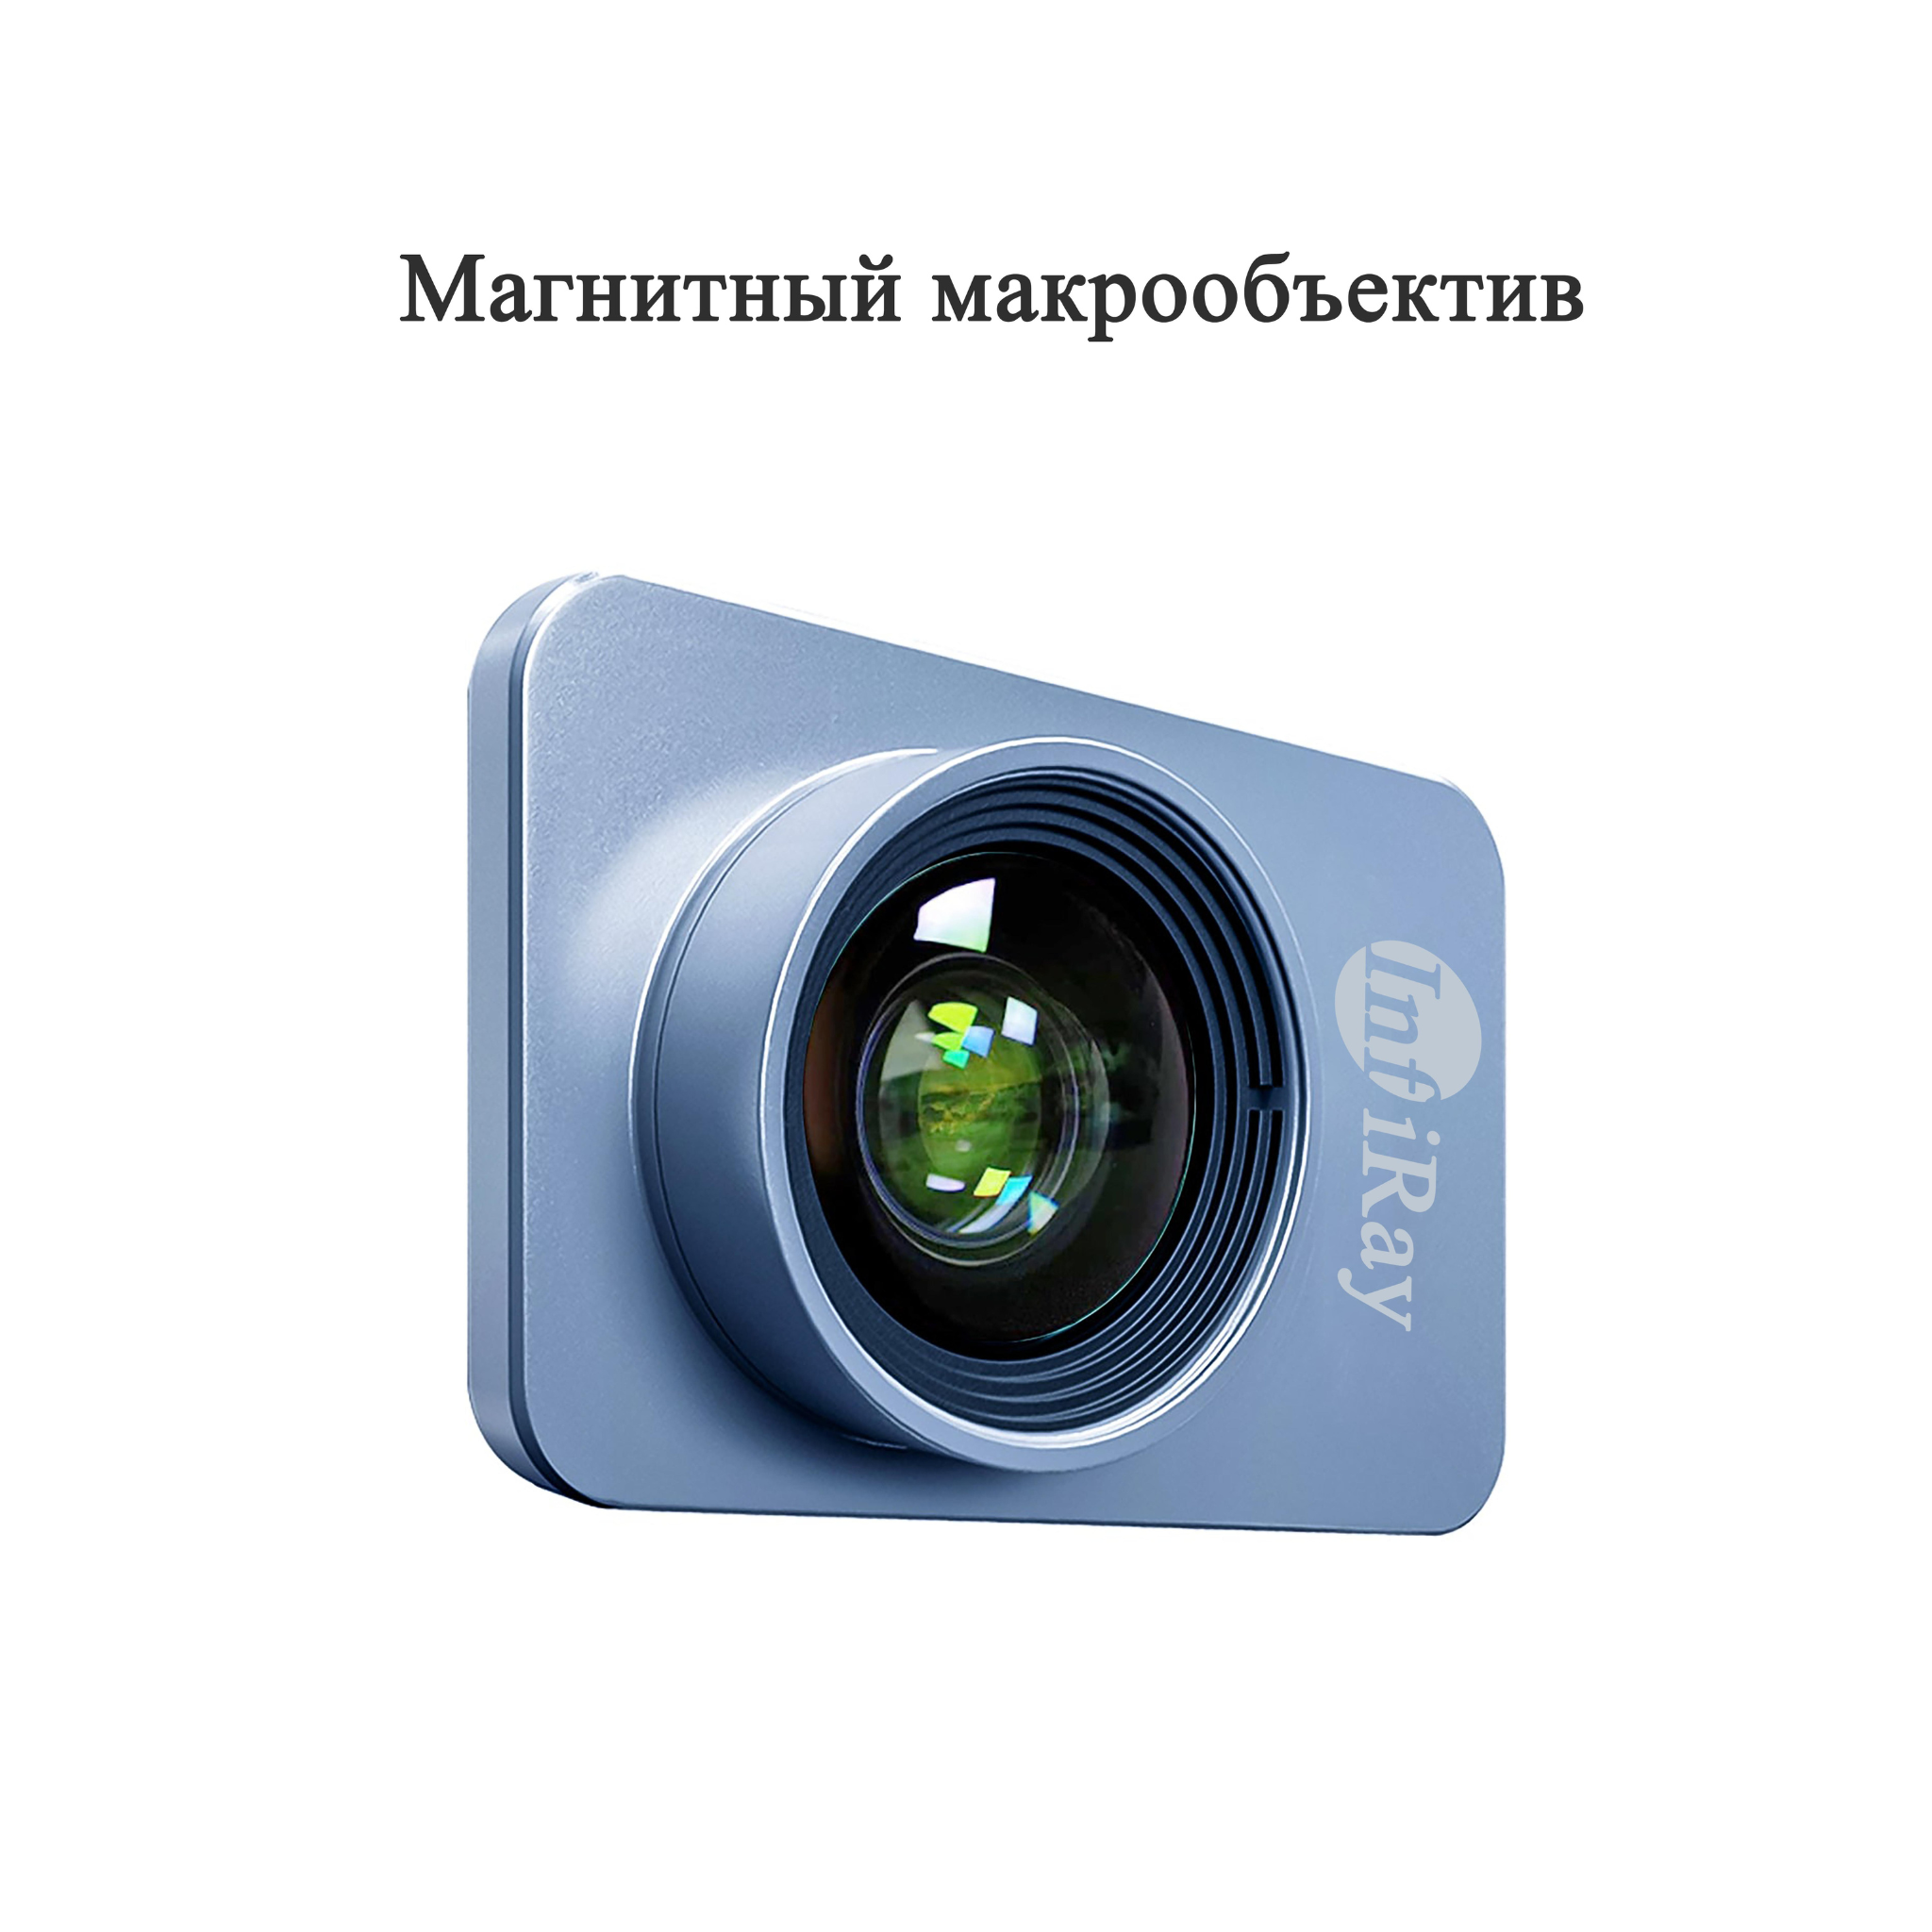 InfiRay P2 Pro - самая маленькая в мире тепловизионная камера